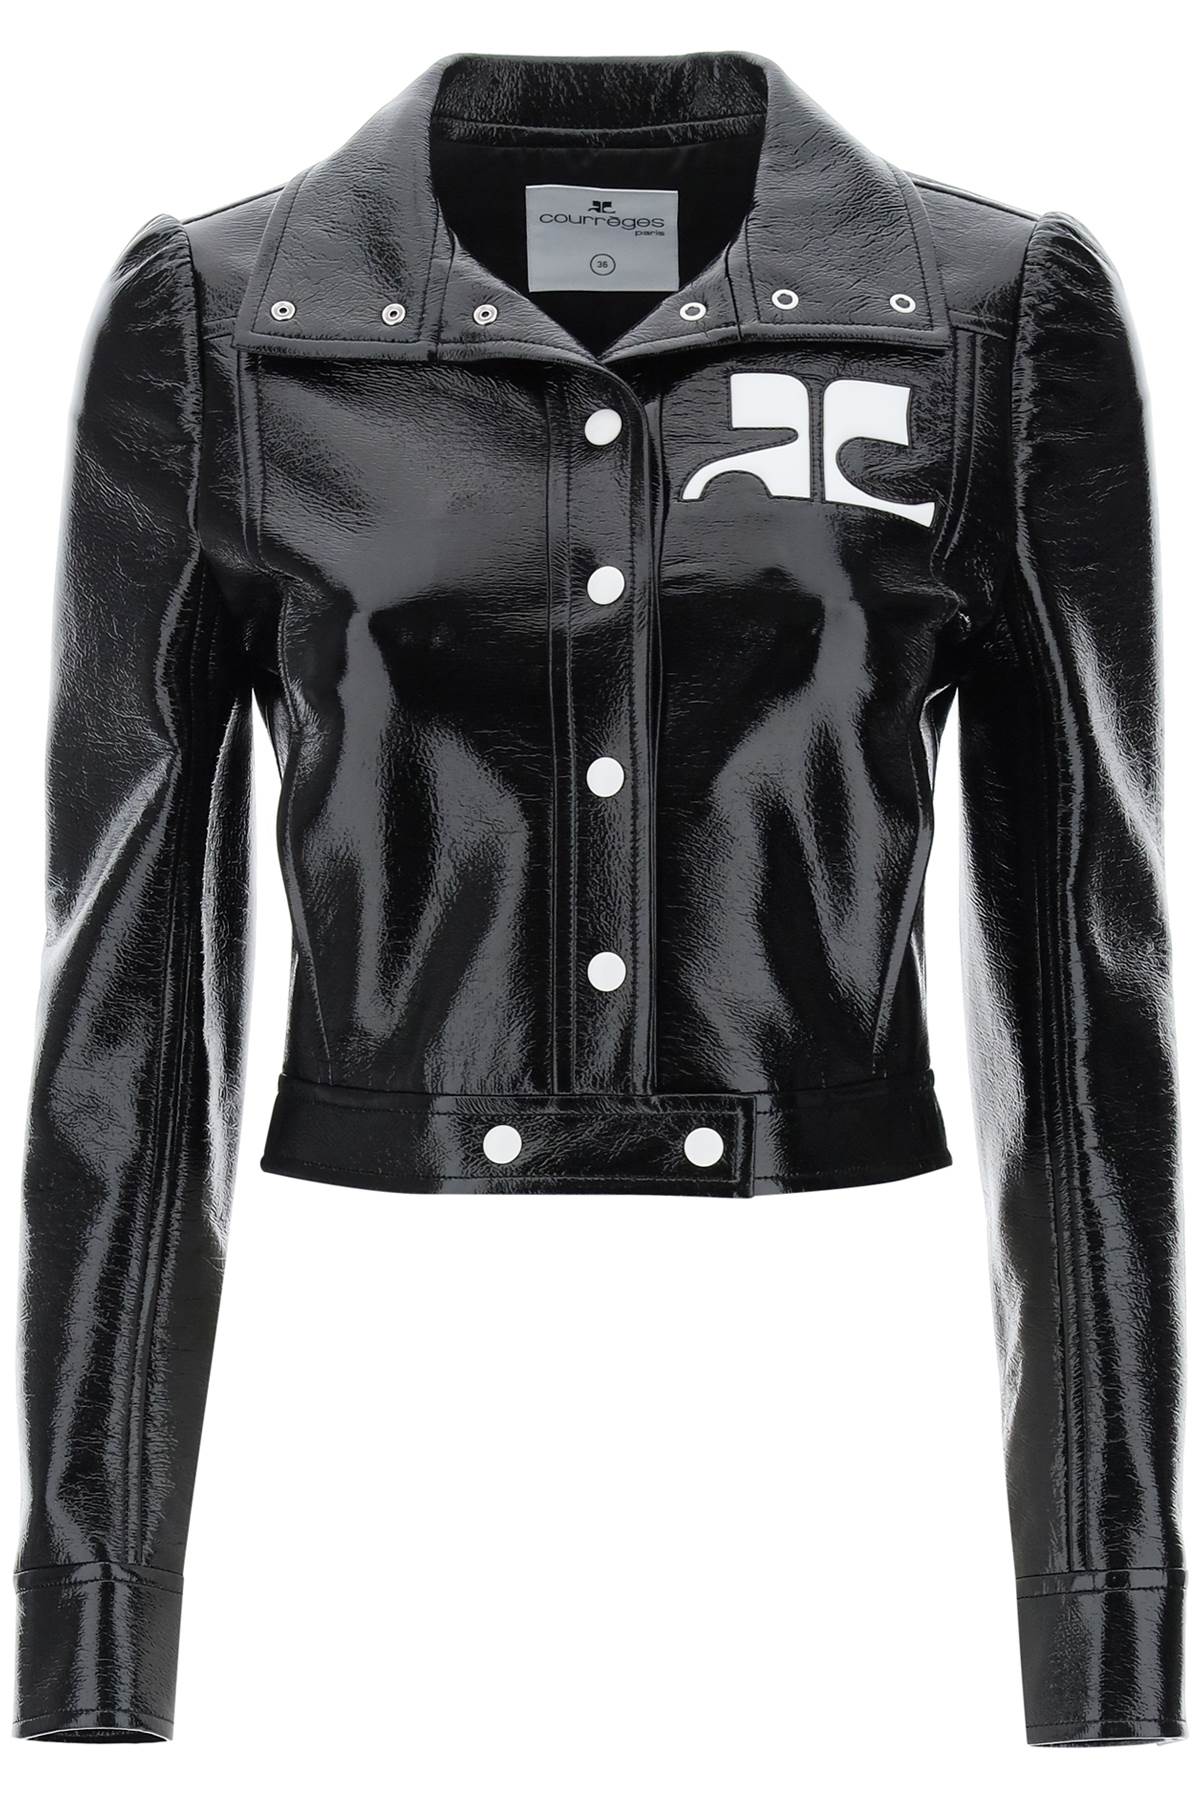 Áo khoác lót cotton phủ đen đặc biệt với chi tiết logo cho phụ nữ